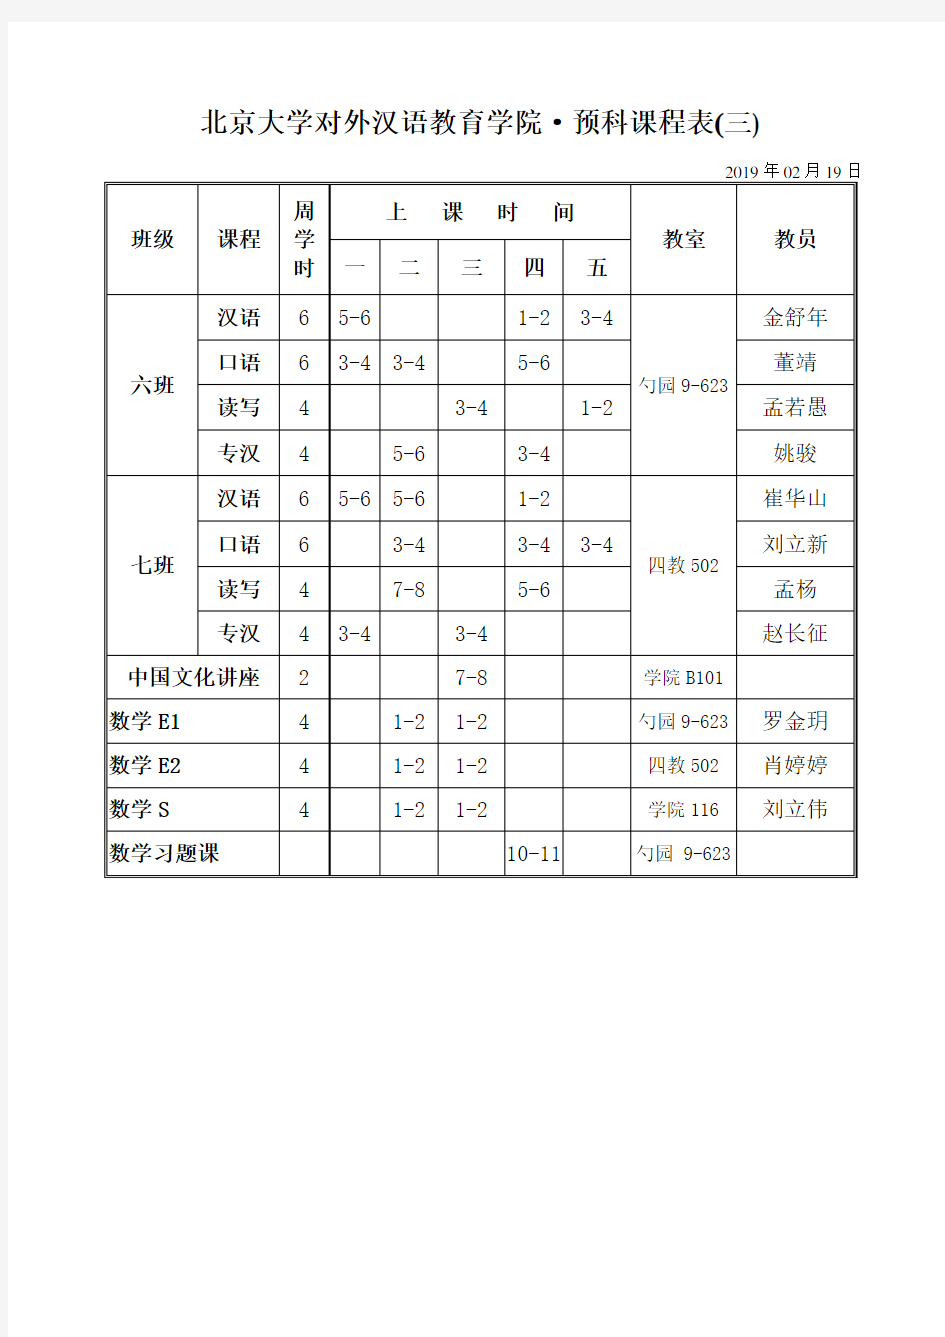 北京大学对外汉语教育学院·预科课程表(三)